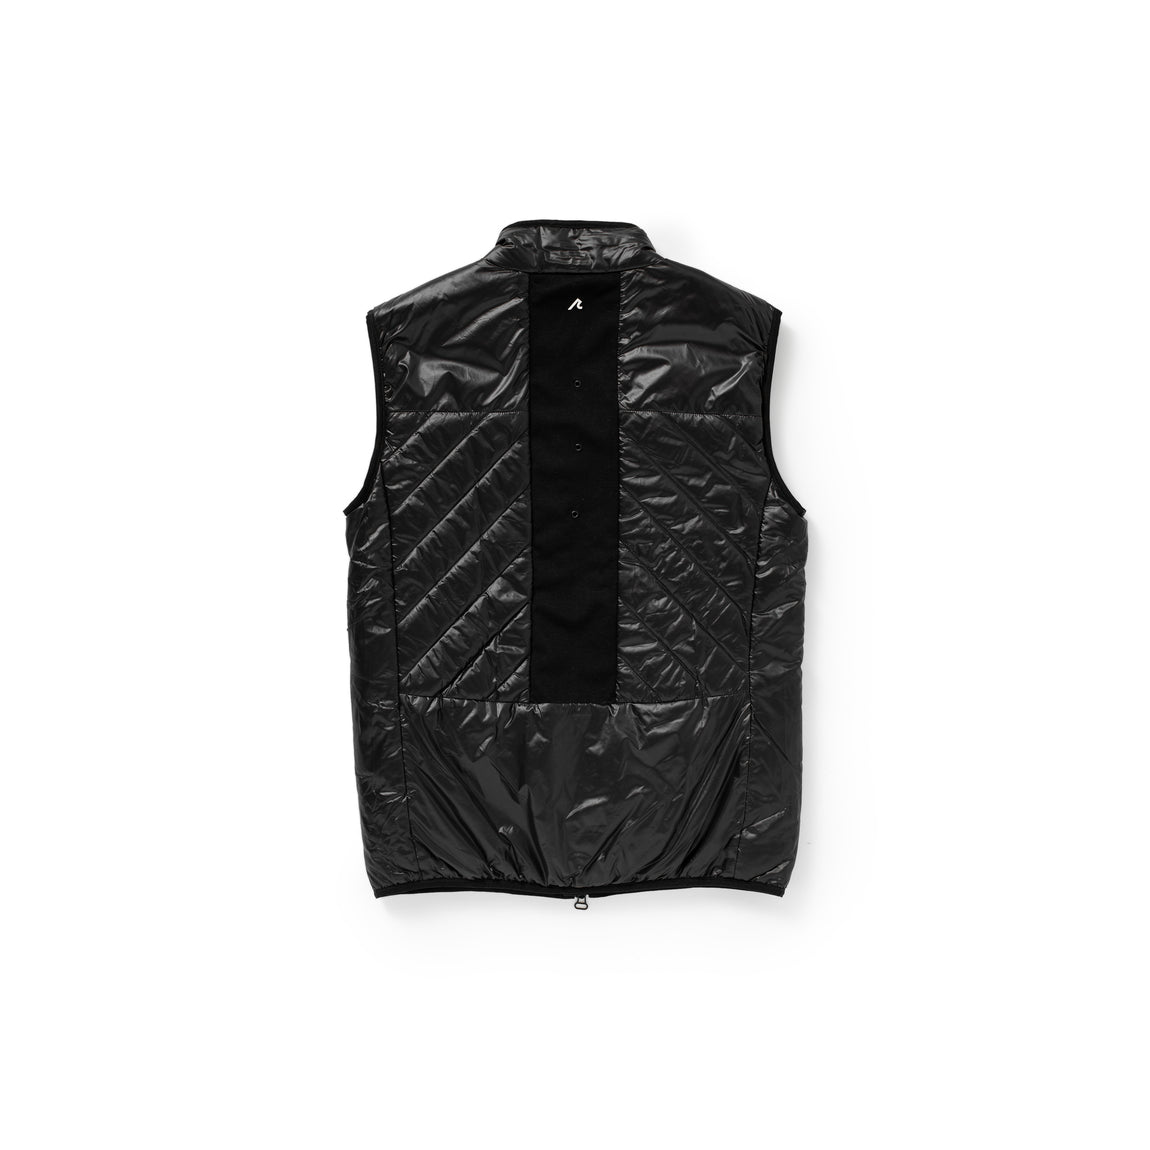 Centre X REDVANLY Harding Vest (Tuxedo Black) - Centre X REDVANLY Harding Vest (Tuxedo Black) - 